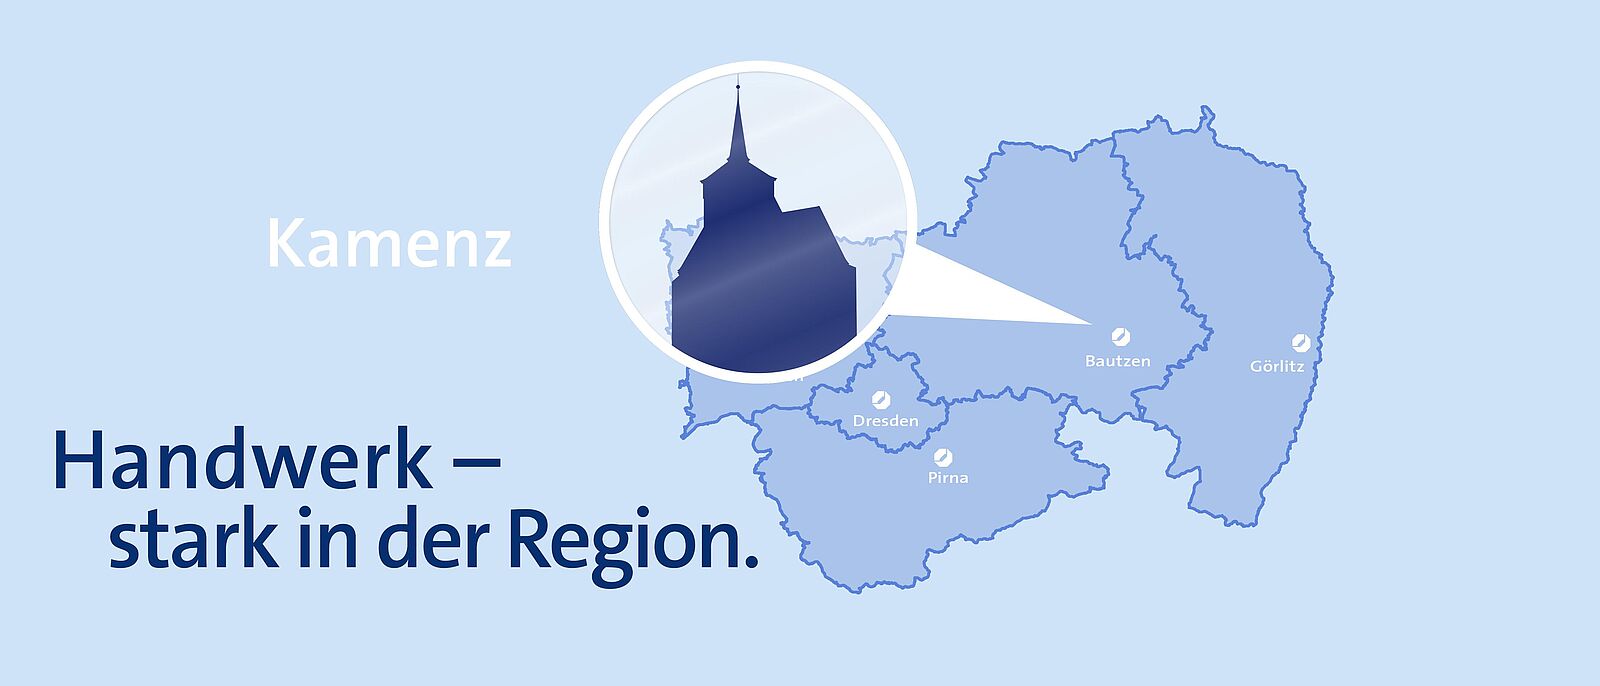 Hellblauer Hintergrund mit einer Karte der Landesdirektion Dresden, darauf ein runder weißer Marker mit der Sehenswürdigkeit von Bautzen als dunkelblau hinterlegter Silhouette, daran ein weißer Pfeil der auf Bautzen zeigt.